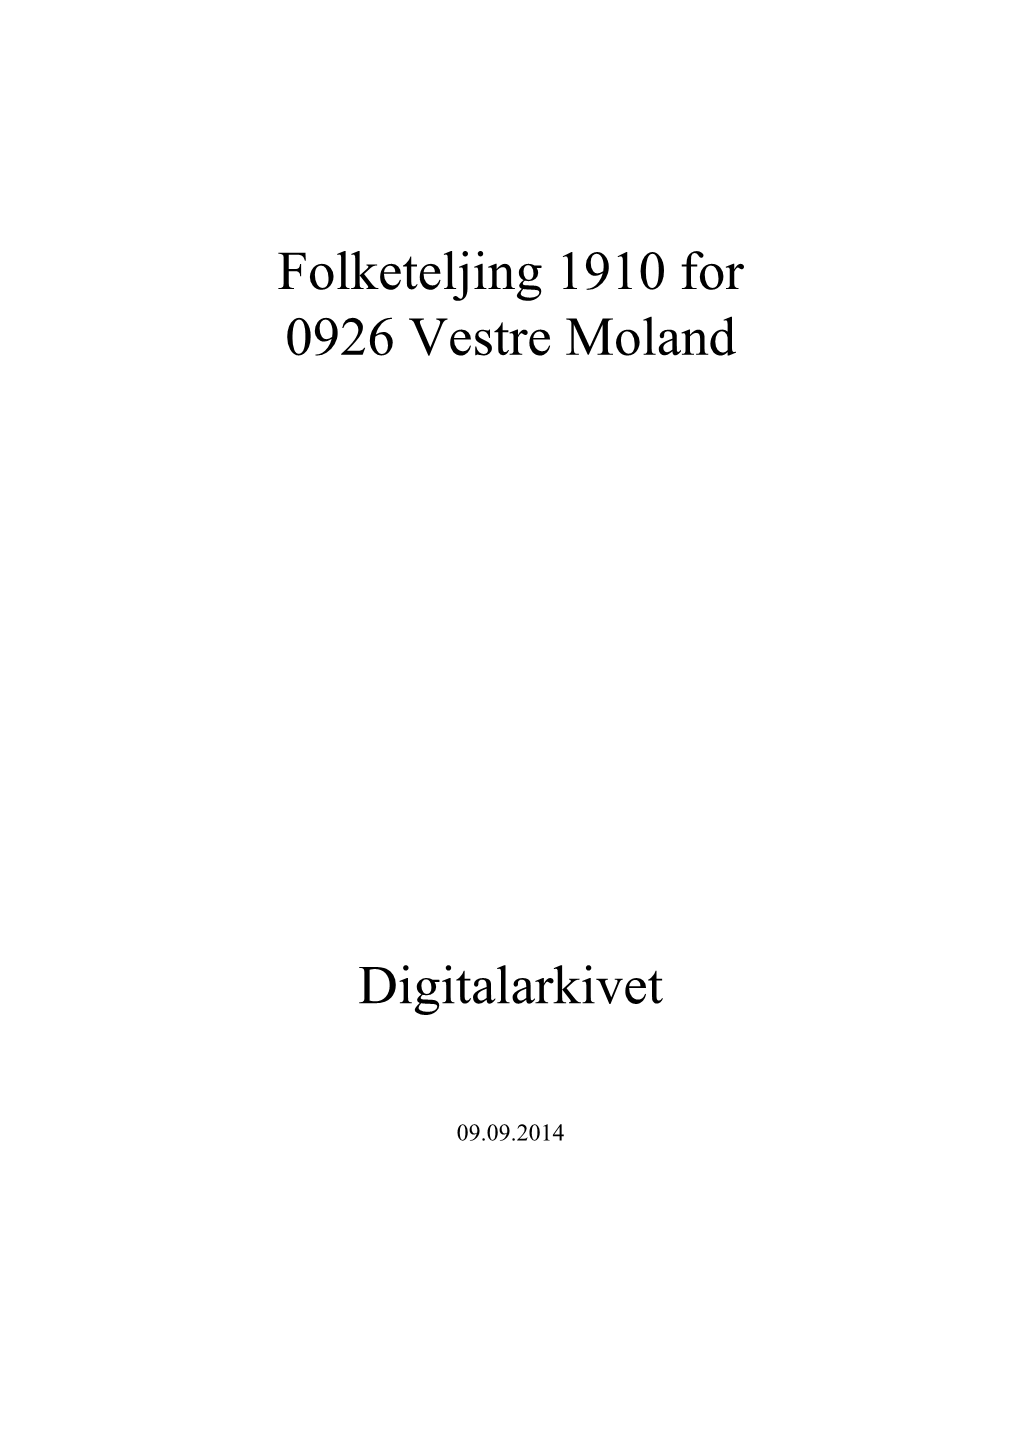 Folketeljing 1910 for 0926 Vestre Moland Digitalarkivet